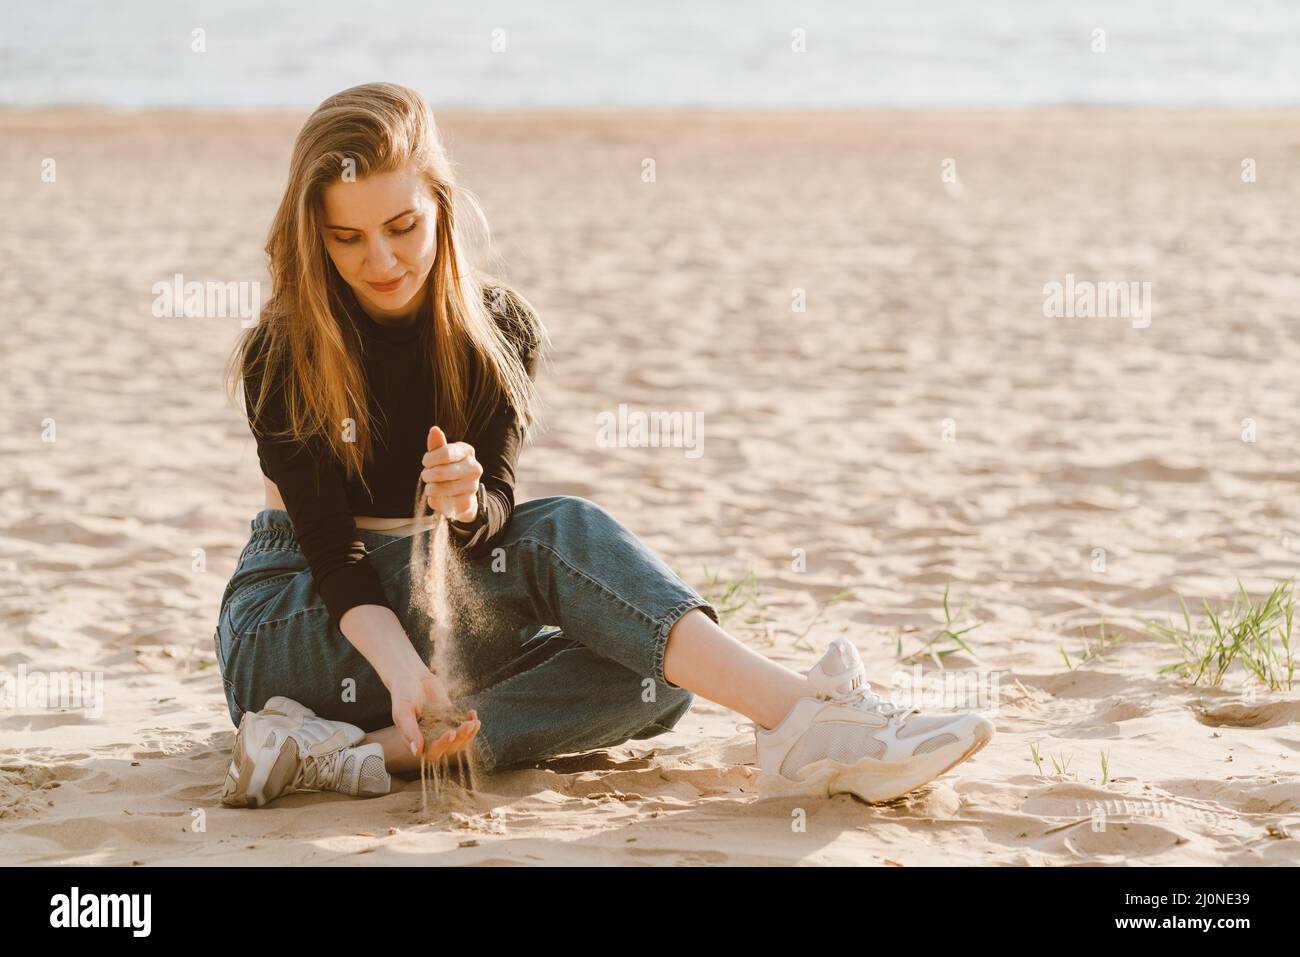 Pleine longueur belle femme assise sur la plage au coucher du soleil en soirée et verser le sable. Durée de vie lente Banque D'Images